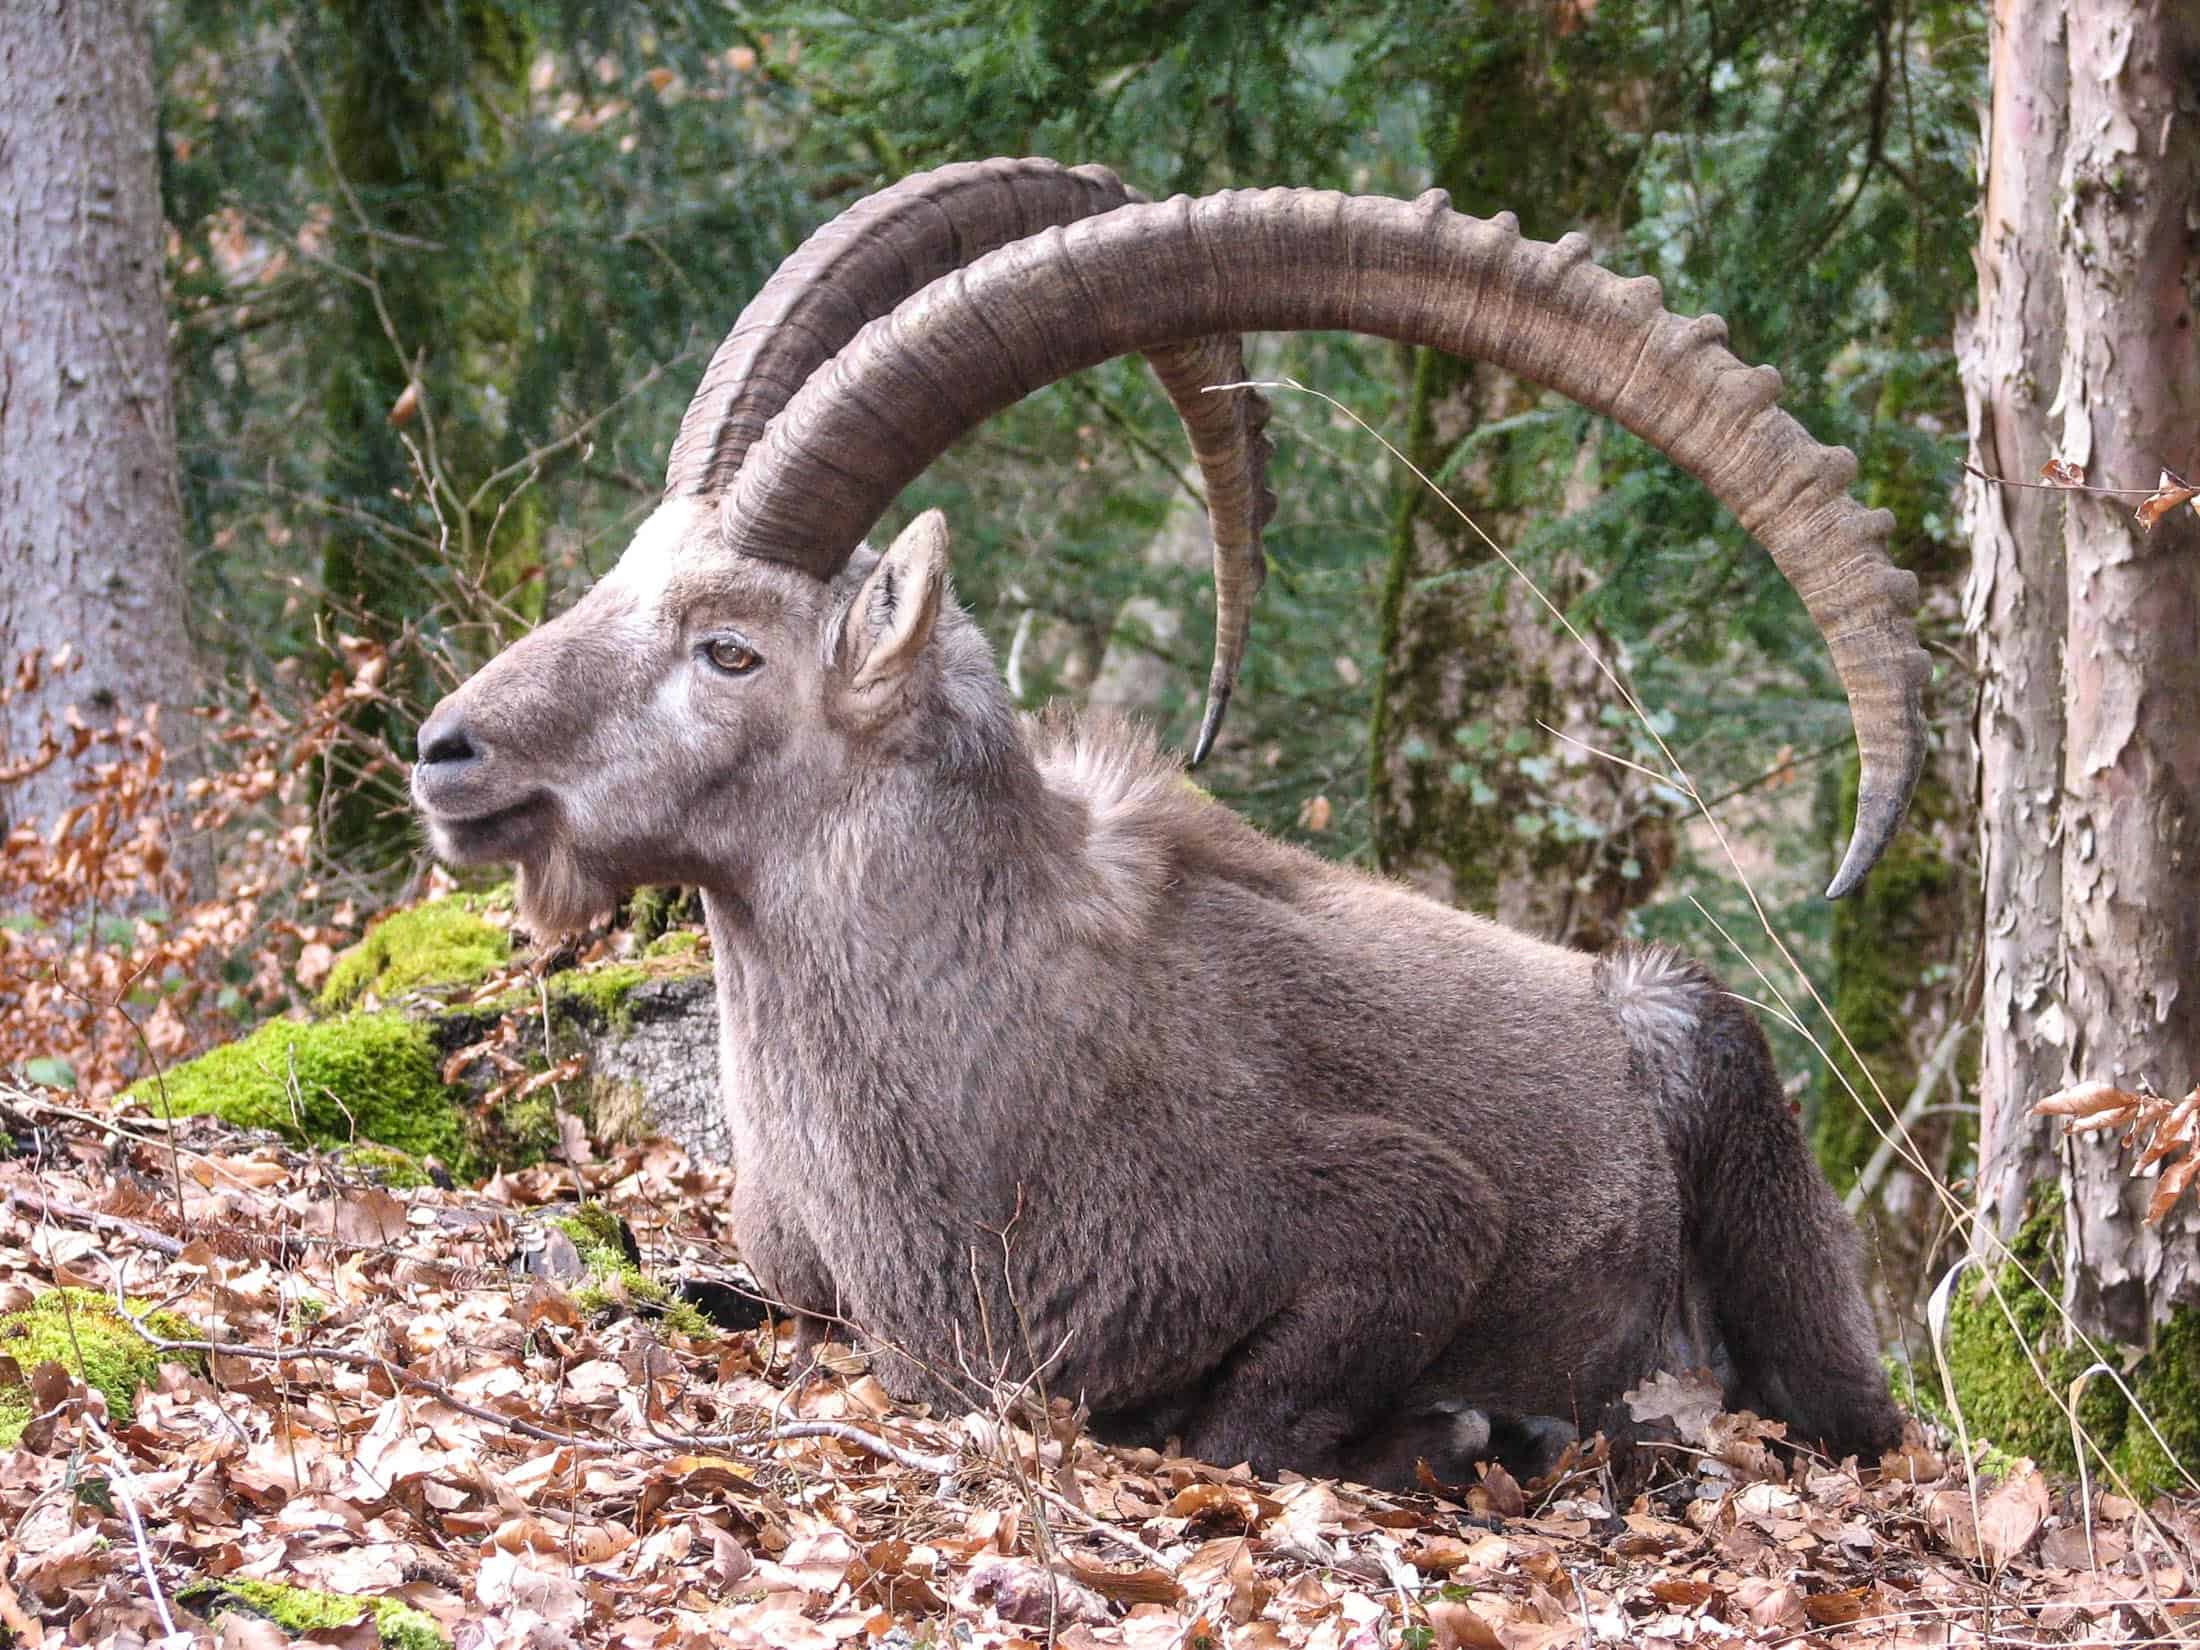 Pyrenana Wild Goat: An Example for de-extinction as a way forward?